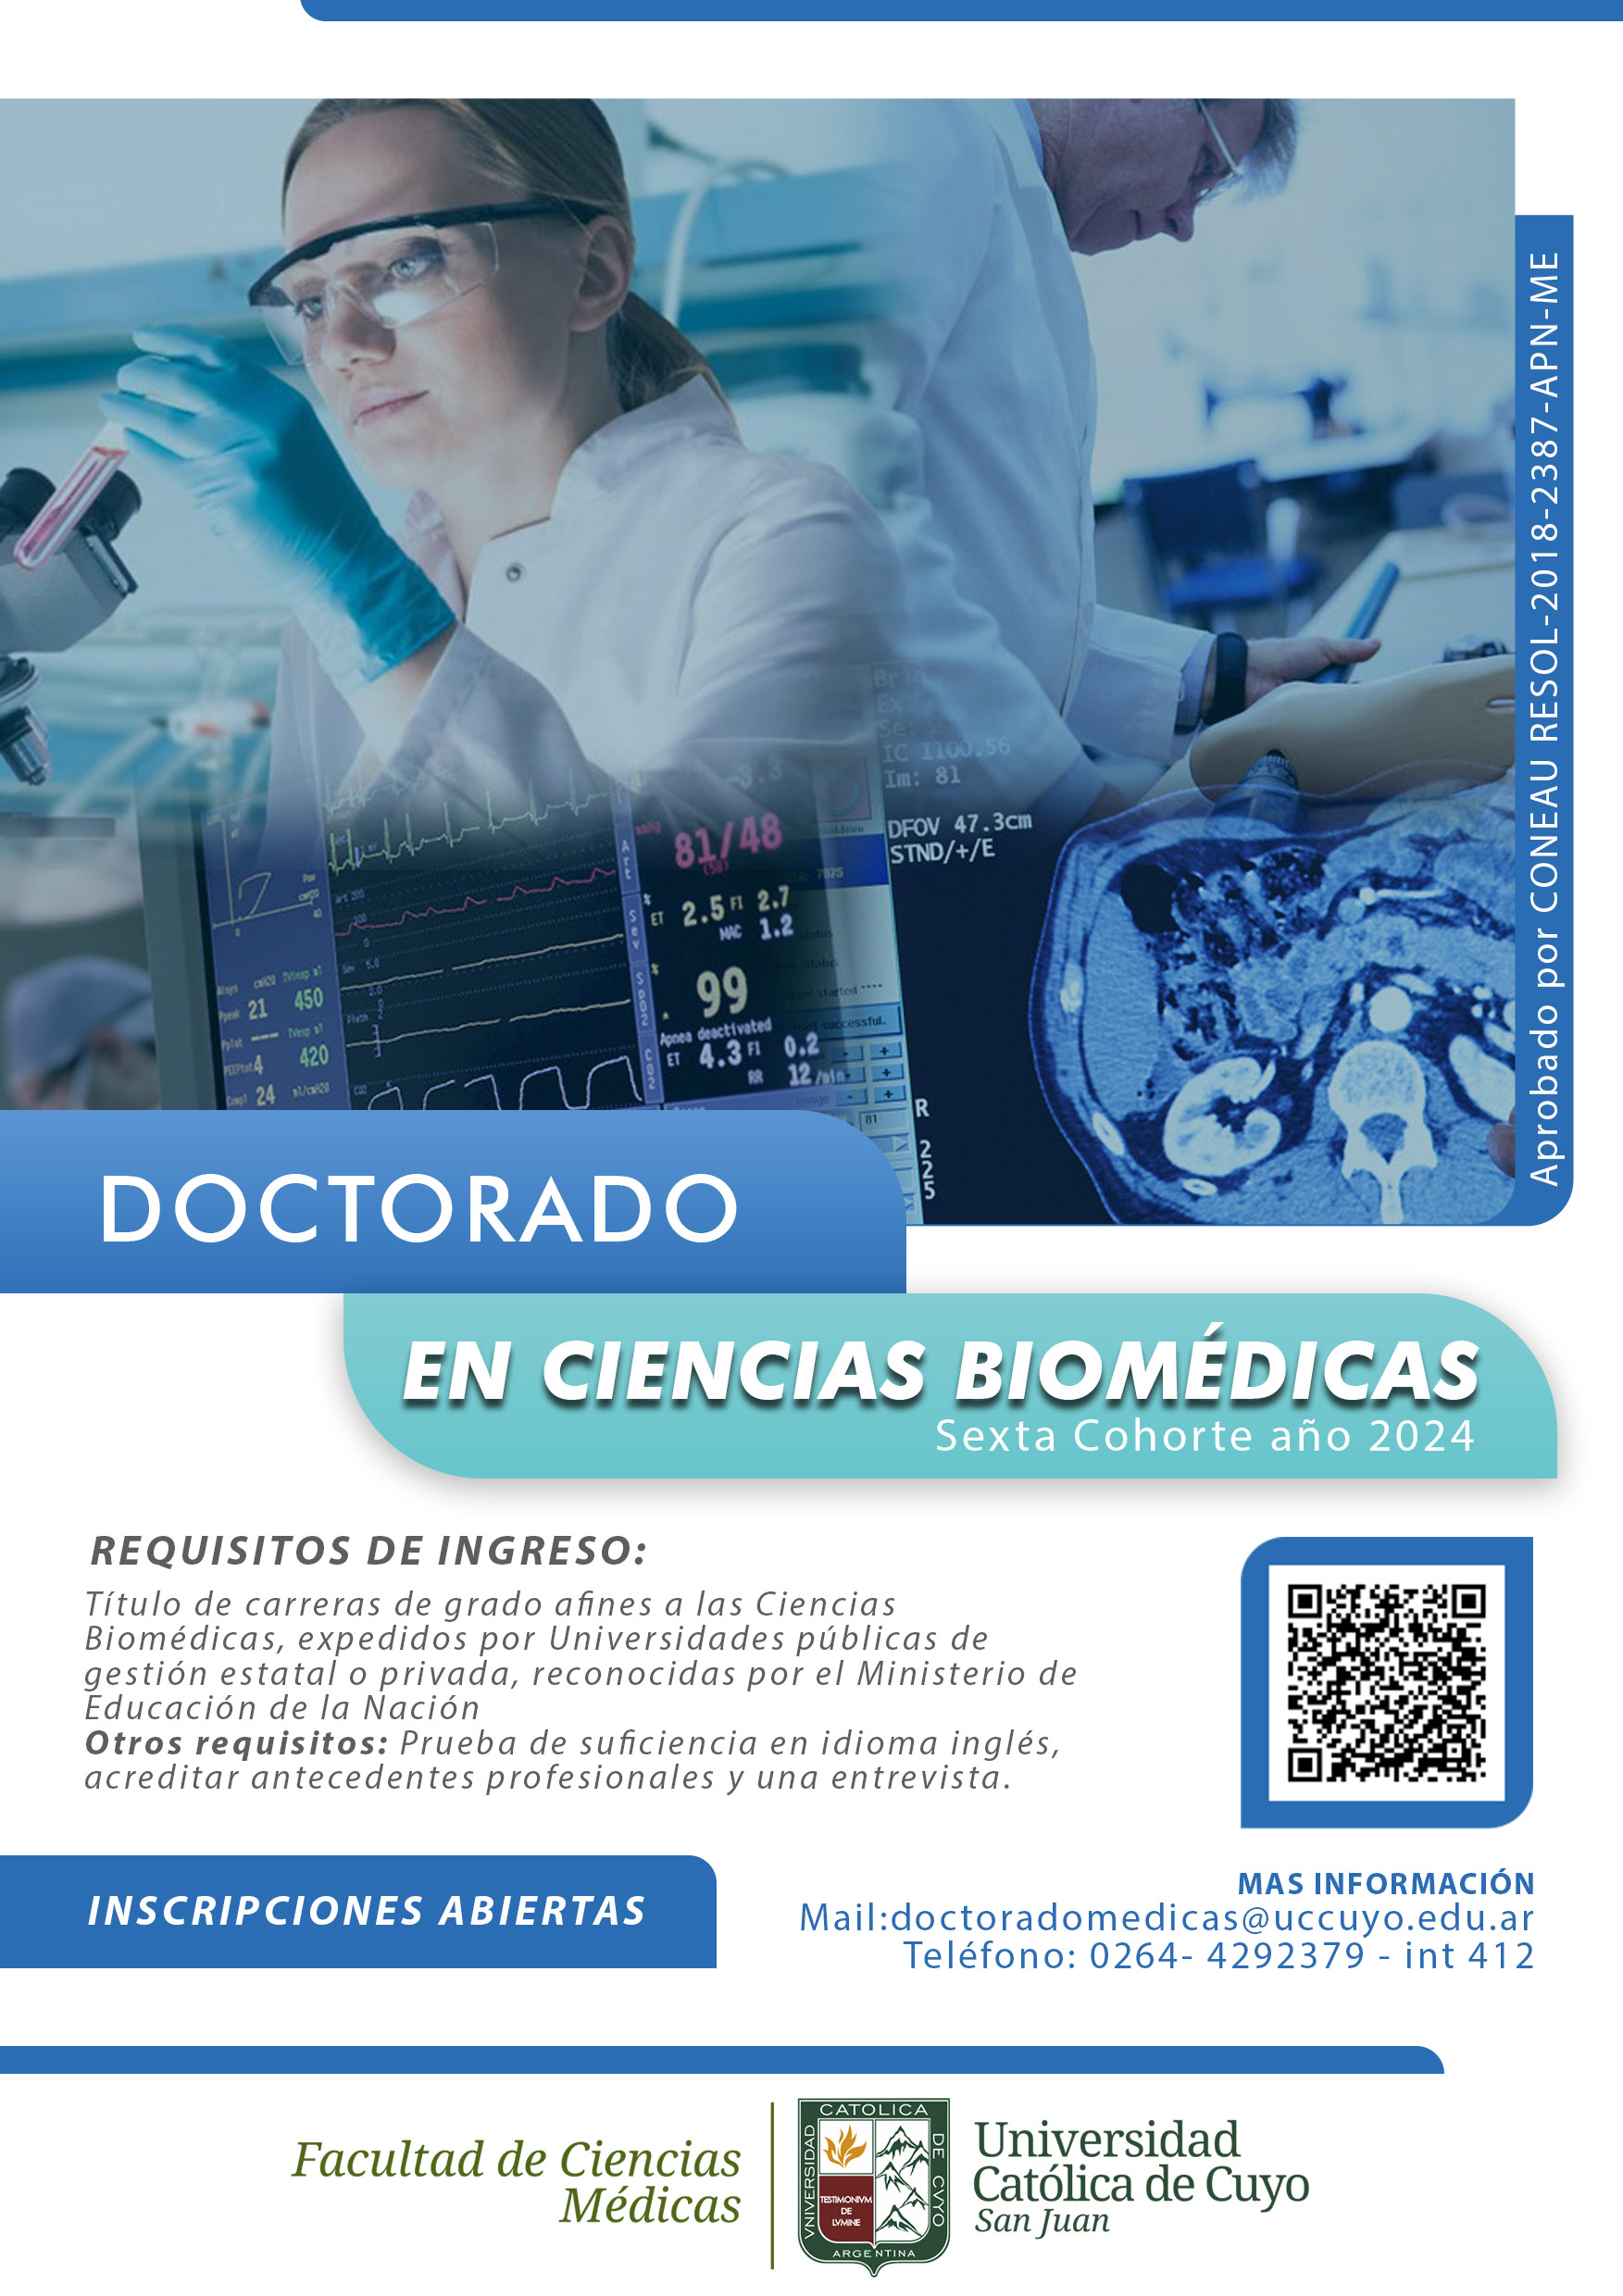 DOCTORADO EN CIENCIAS BIOMEDICAS 